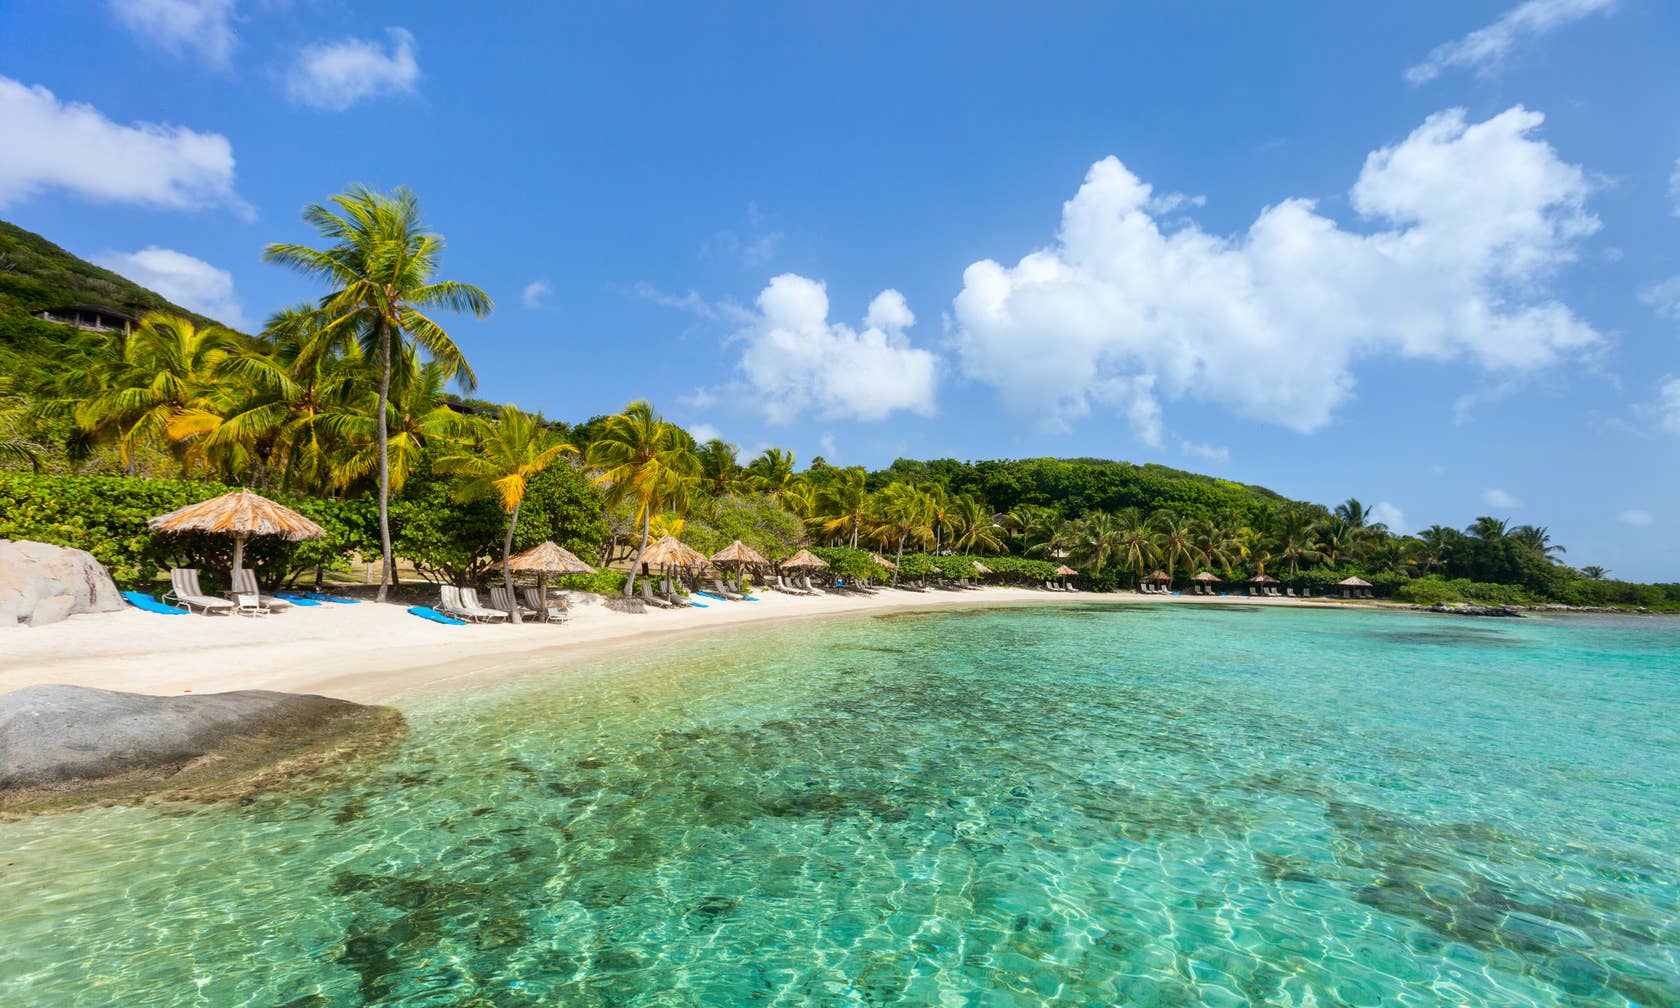 Ferienunterkünfte in Karibik